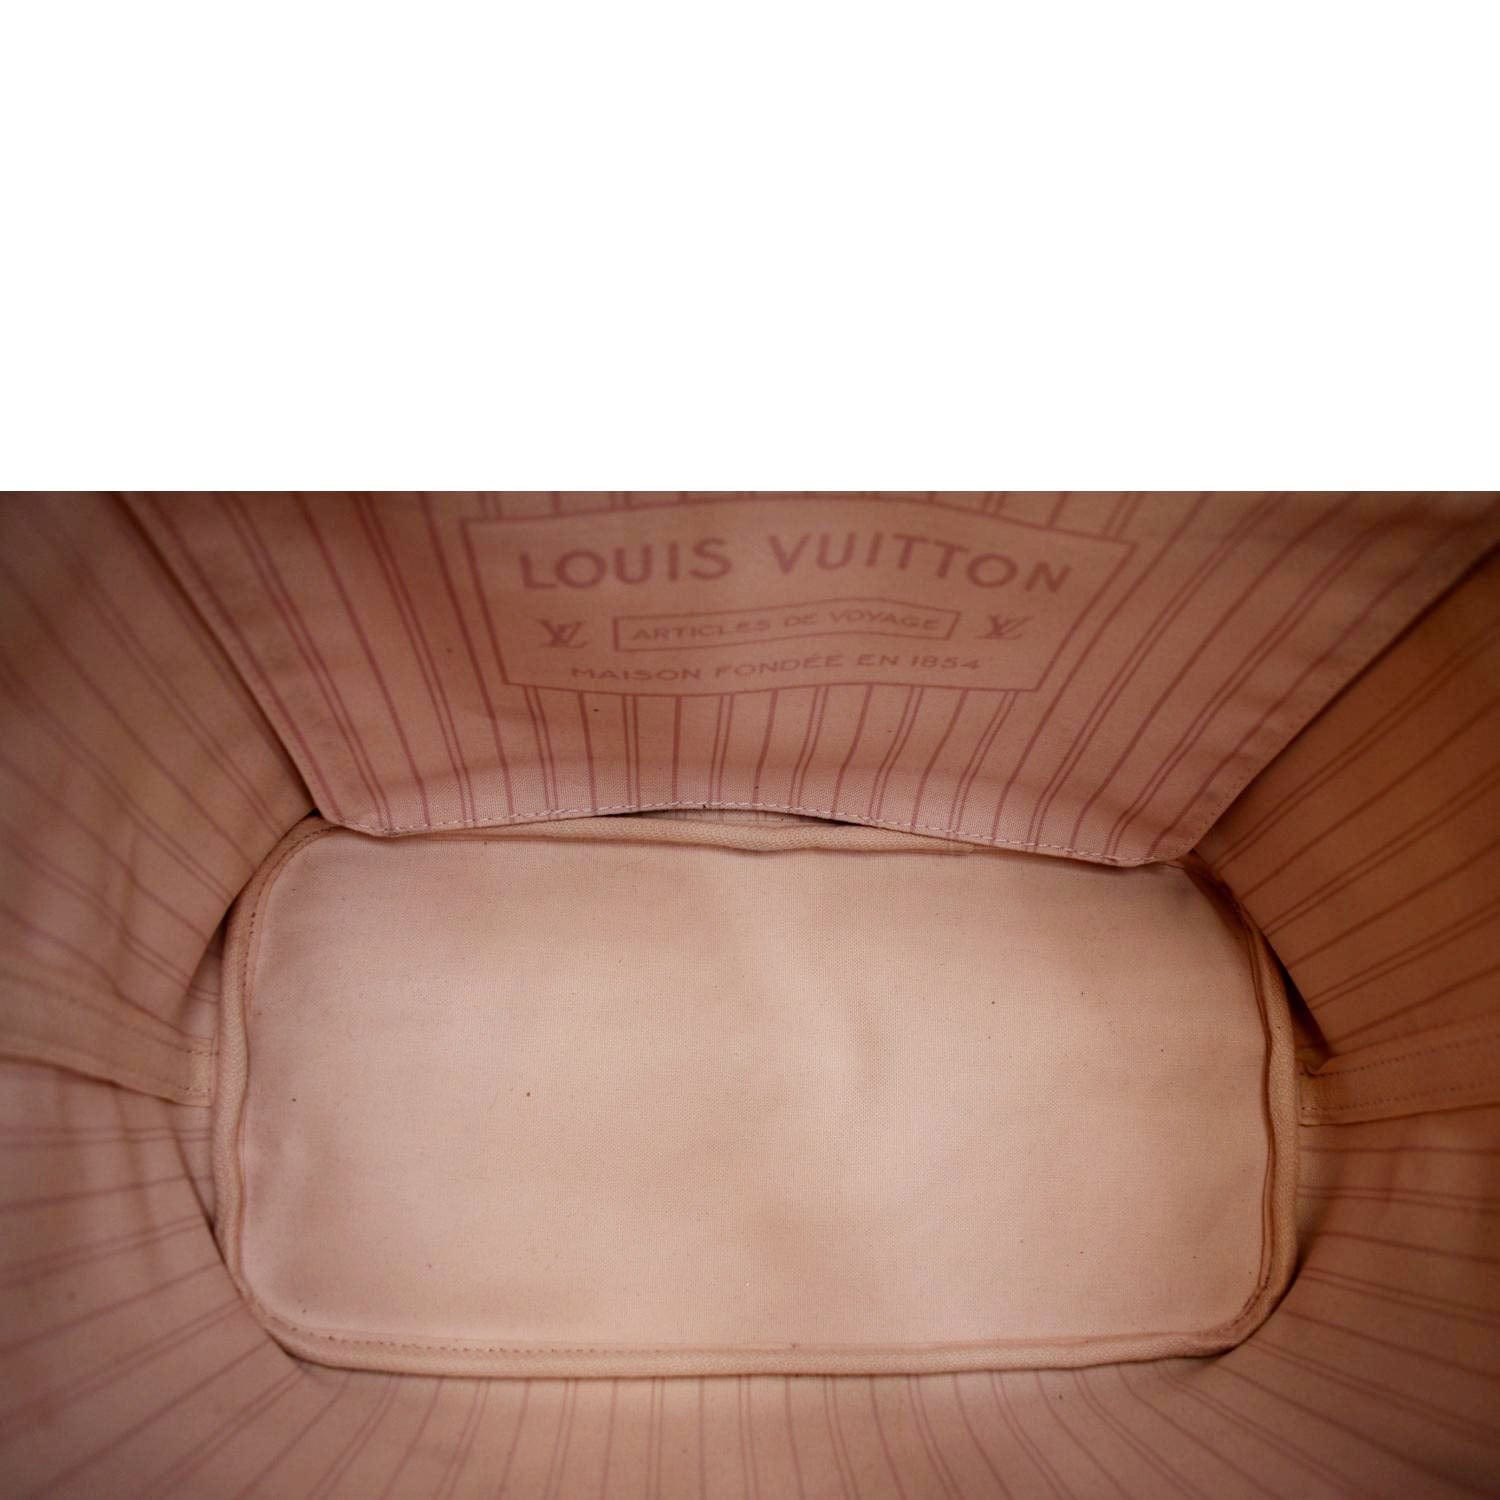 Louis Vuitton, Bags, Louis Vuitton Louis Vuitton Damier Neverfull Mm Tote  Bag Ebene Series N4358